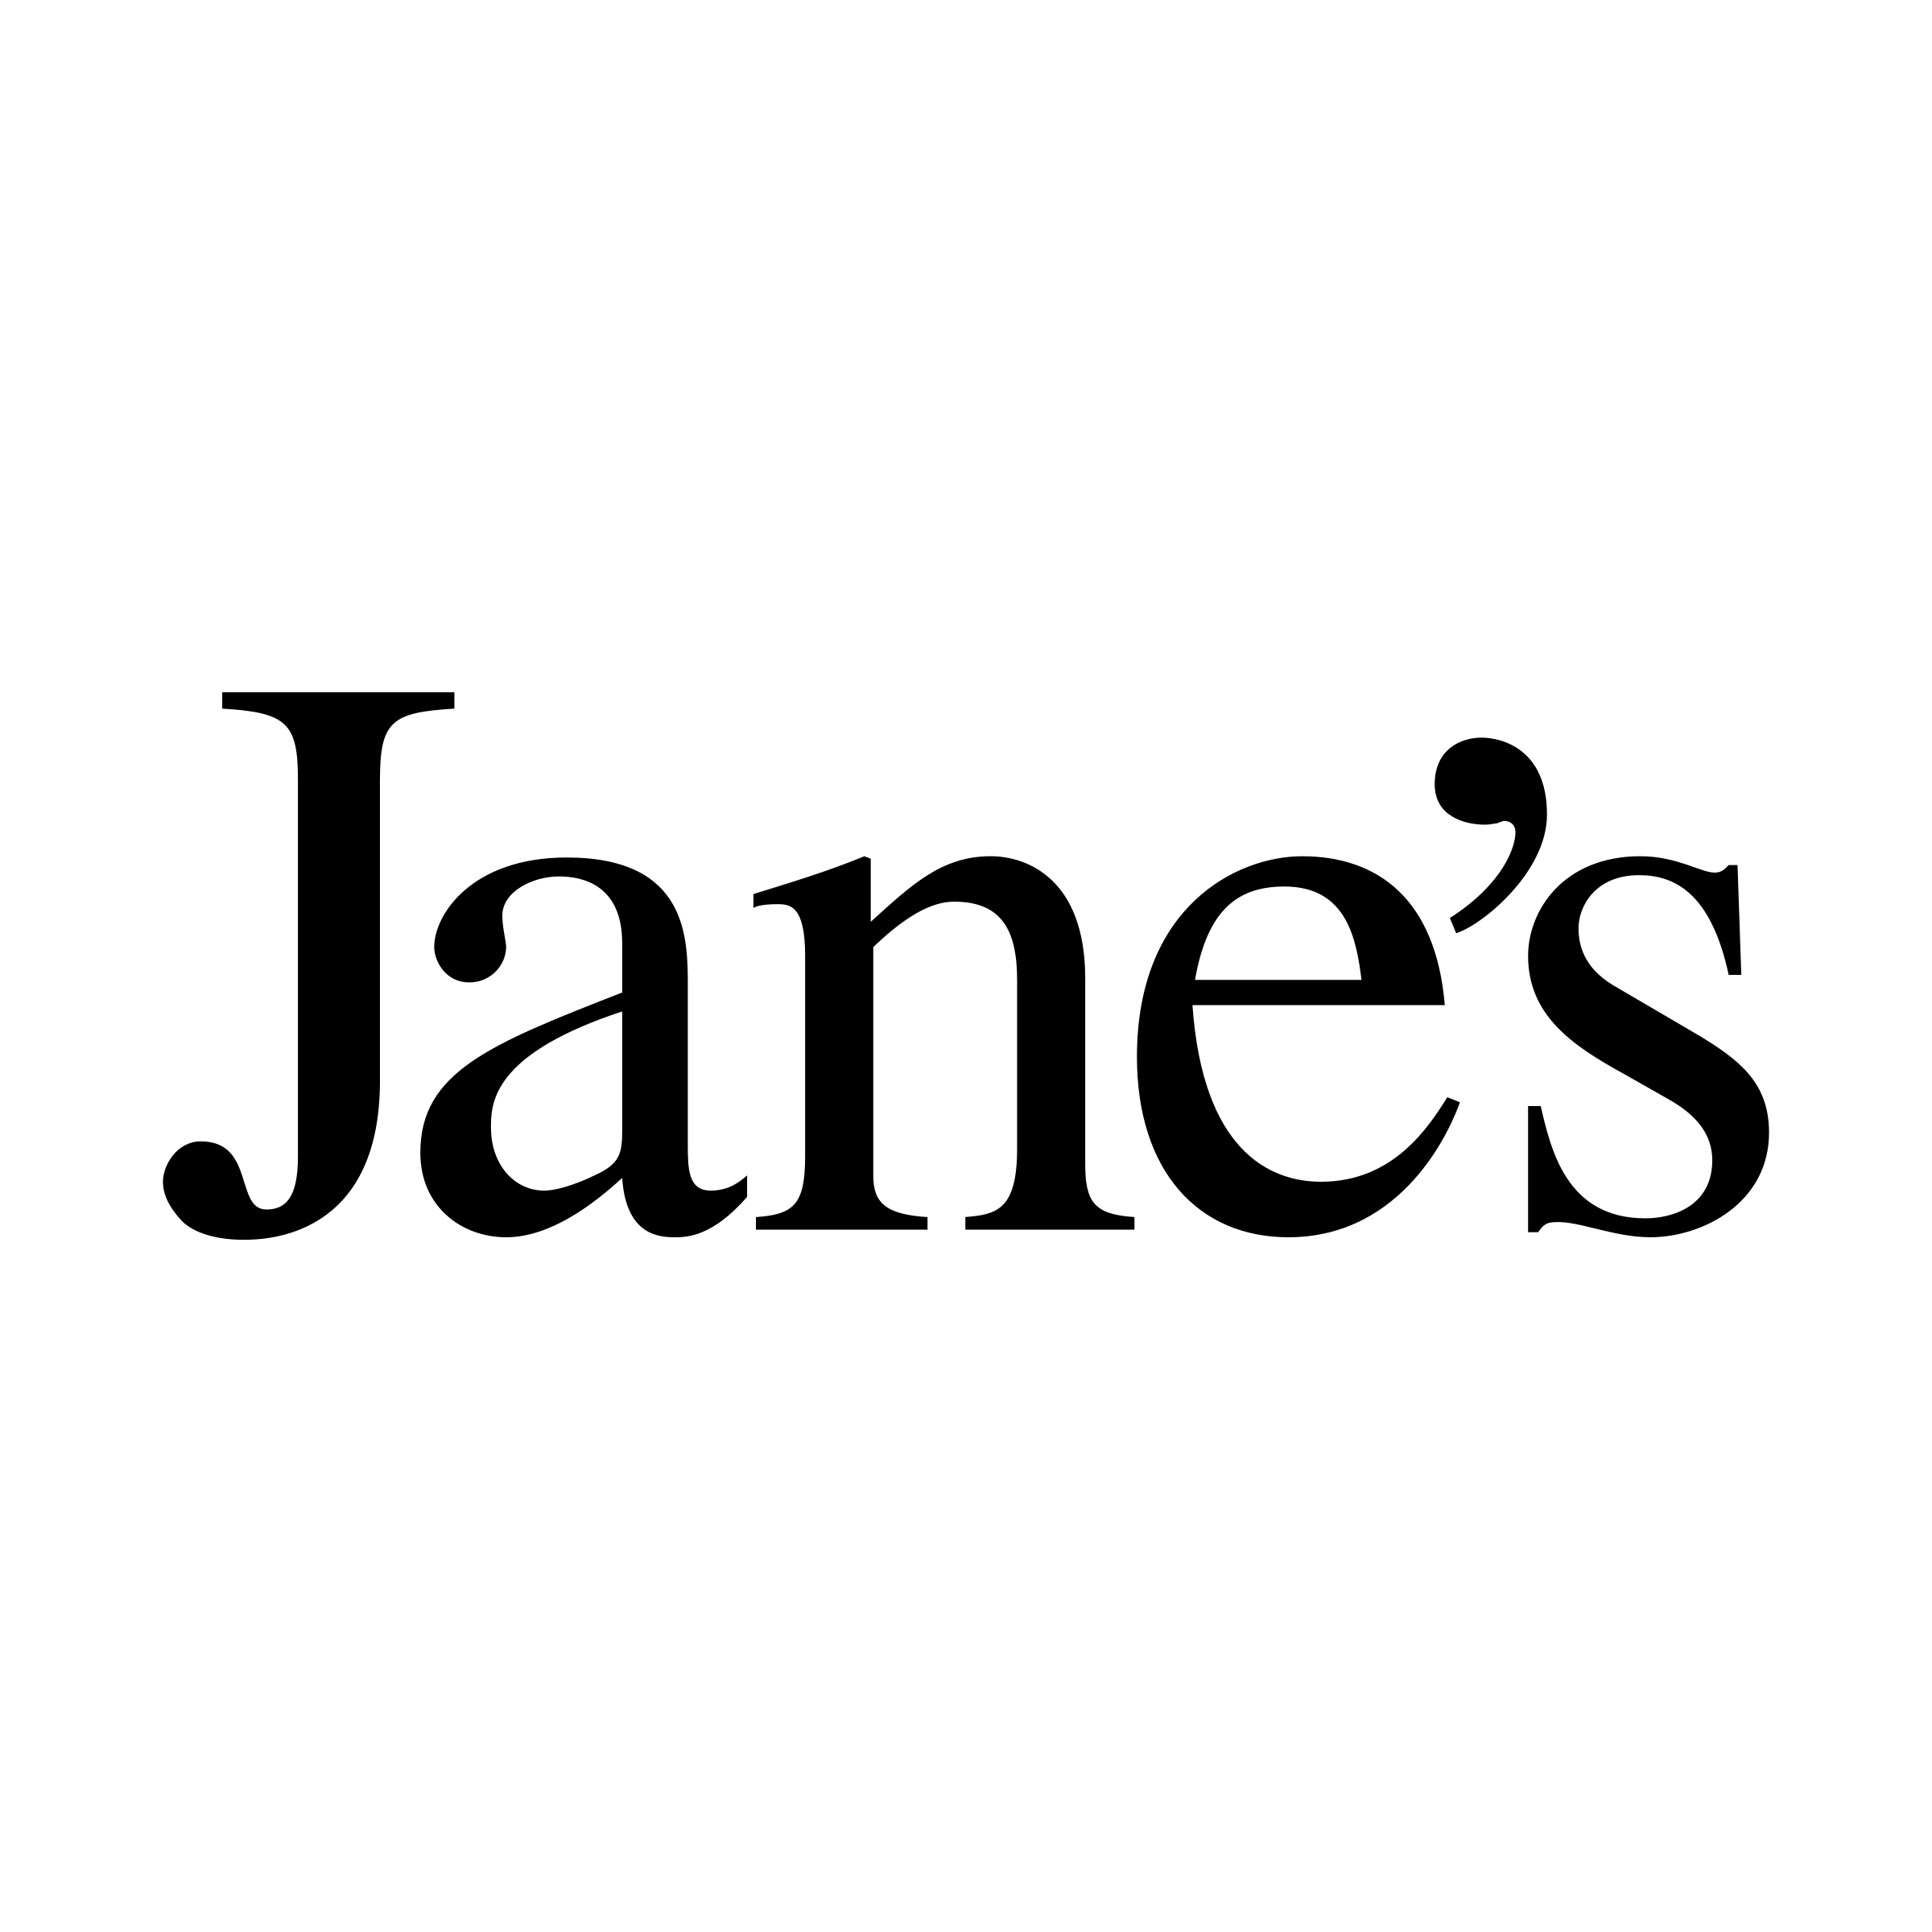 Jane Logo - Jane's Logo PNG Transparent & SVG Vector